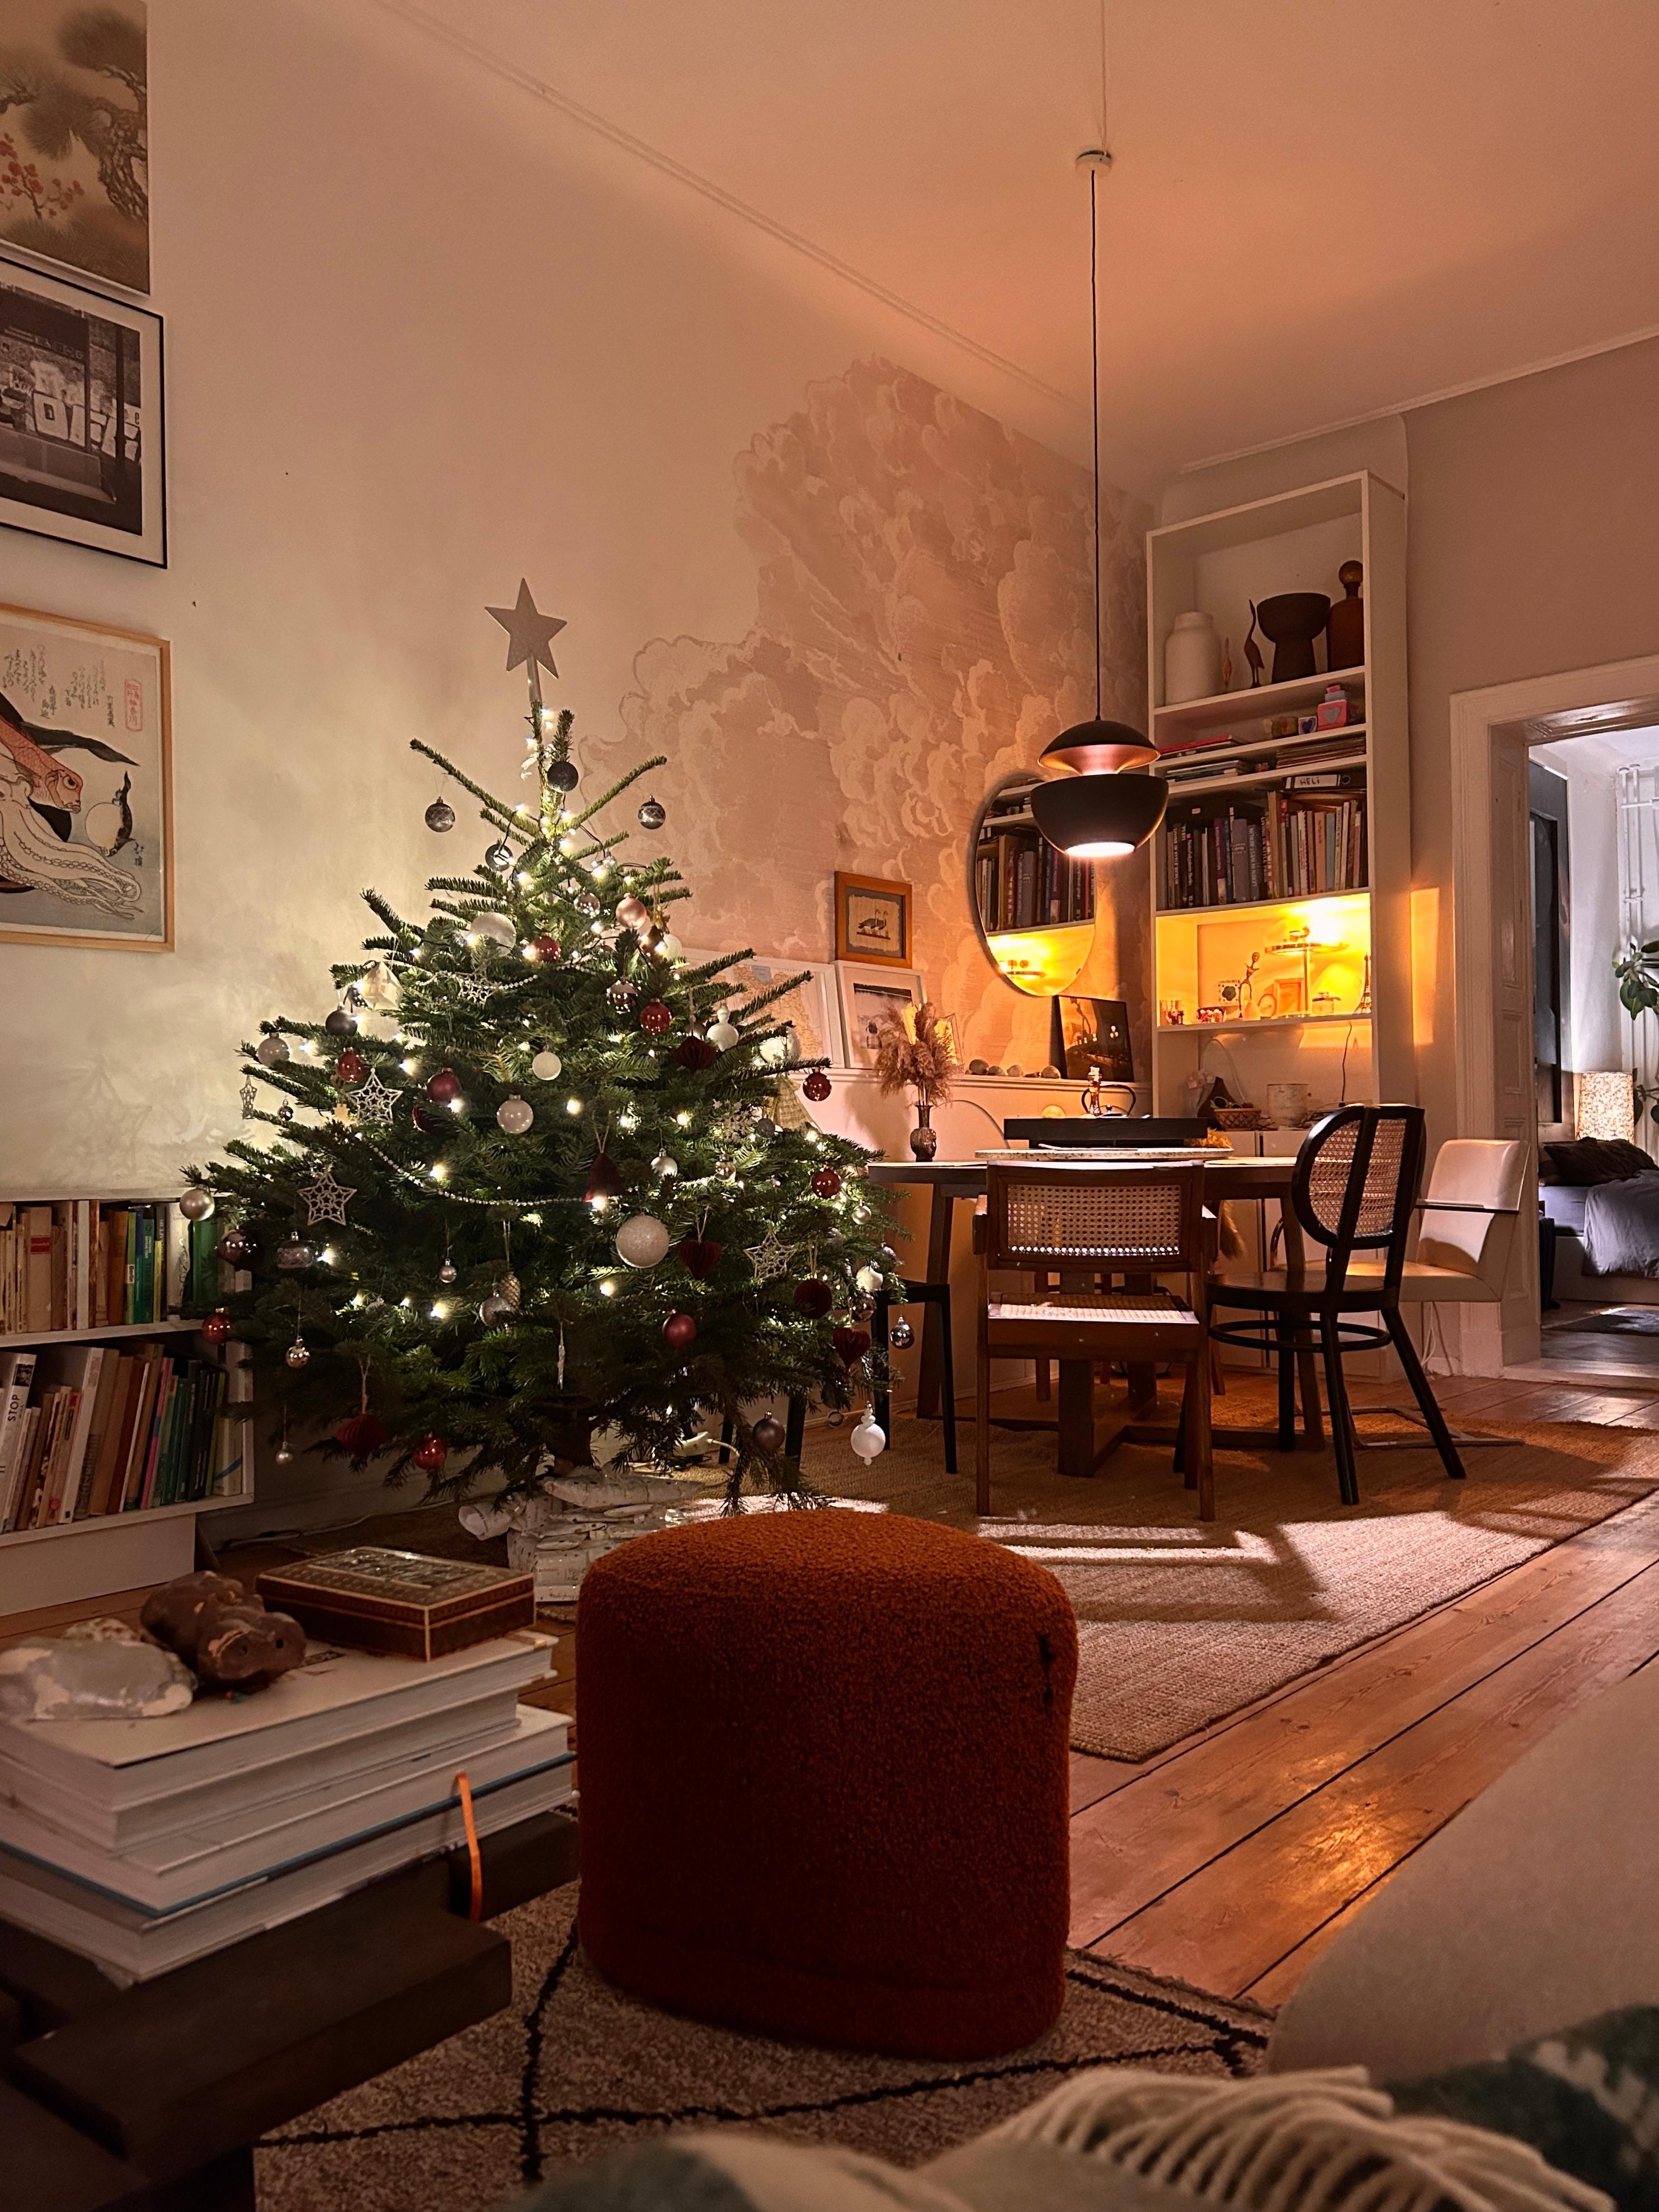 Lichtermeer. Allen einen gemütlichen Abend! ♥️🕯️✨ #wohnzimmer #esszimmer #weihnachtsbaum #weihnachtsdeko #altbau 